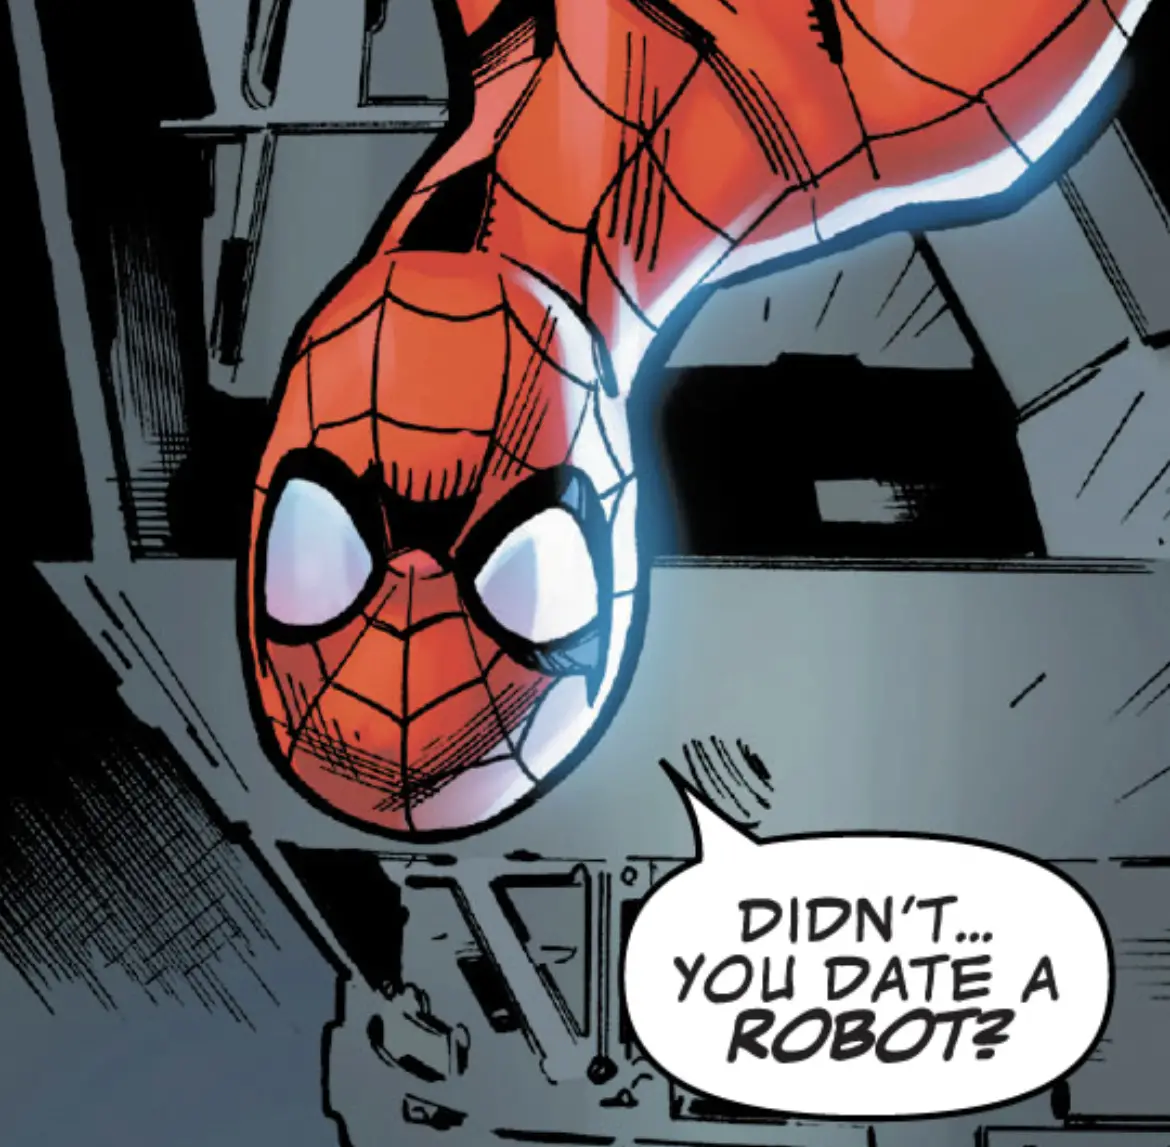 Spider-Man asks, "Didn't you date a robot?"